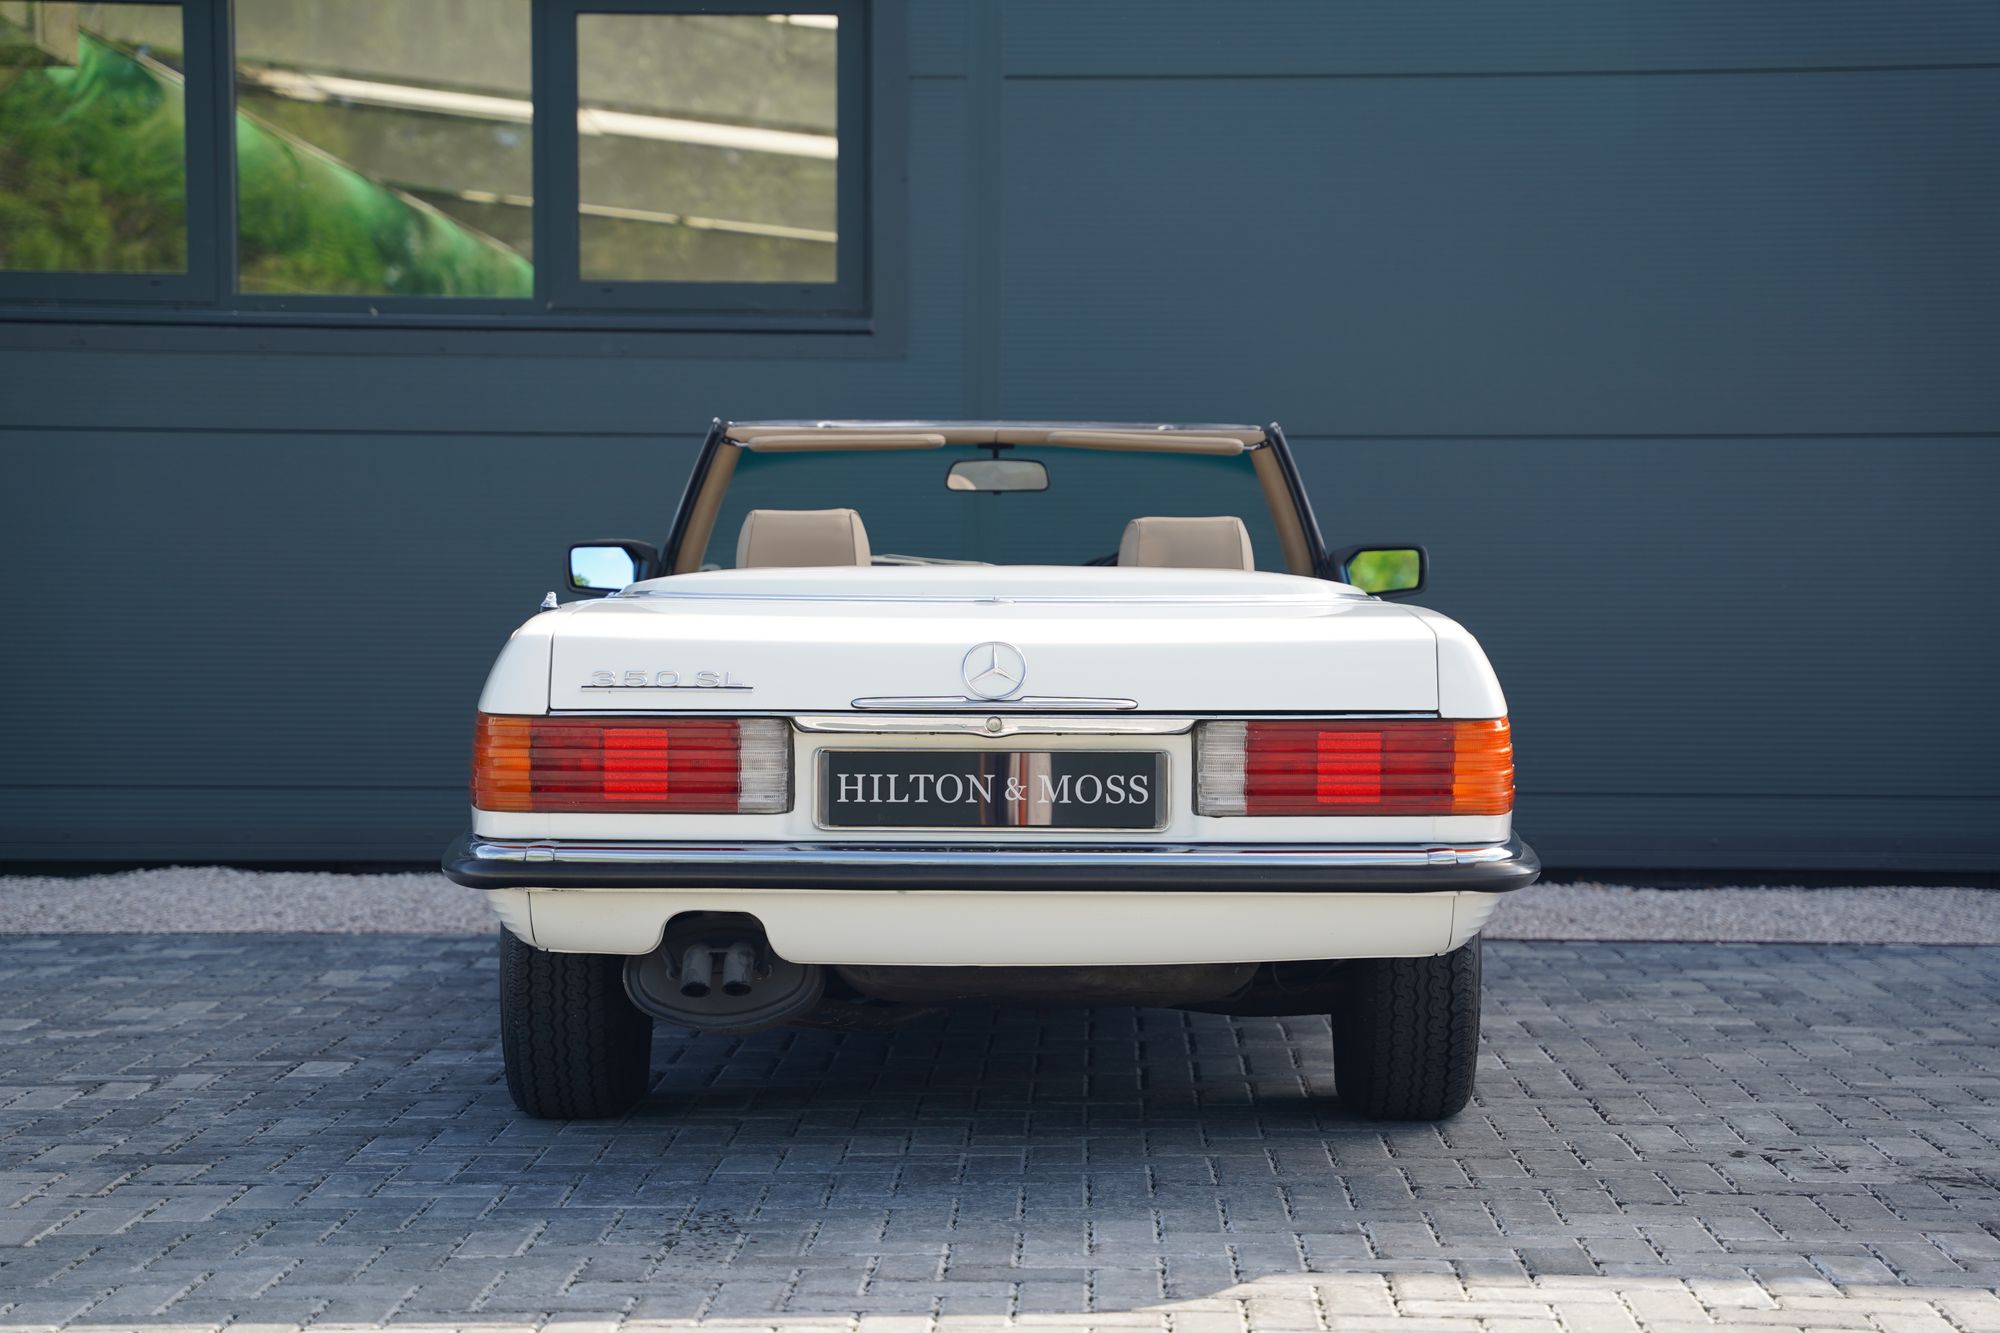 1980 Mercedes-Benz 350SL